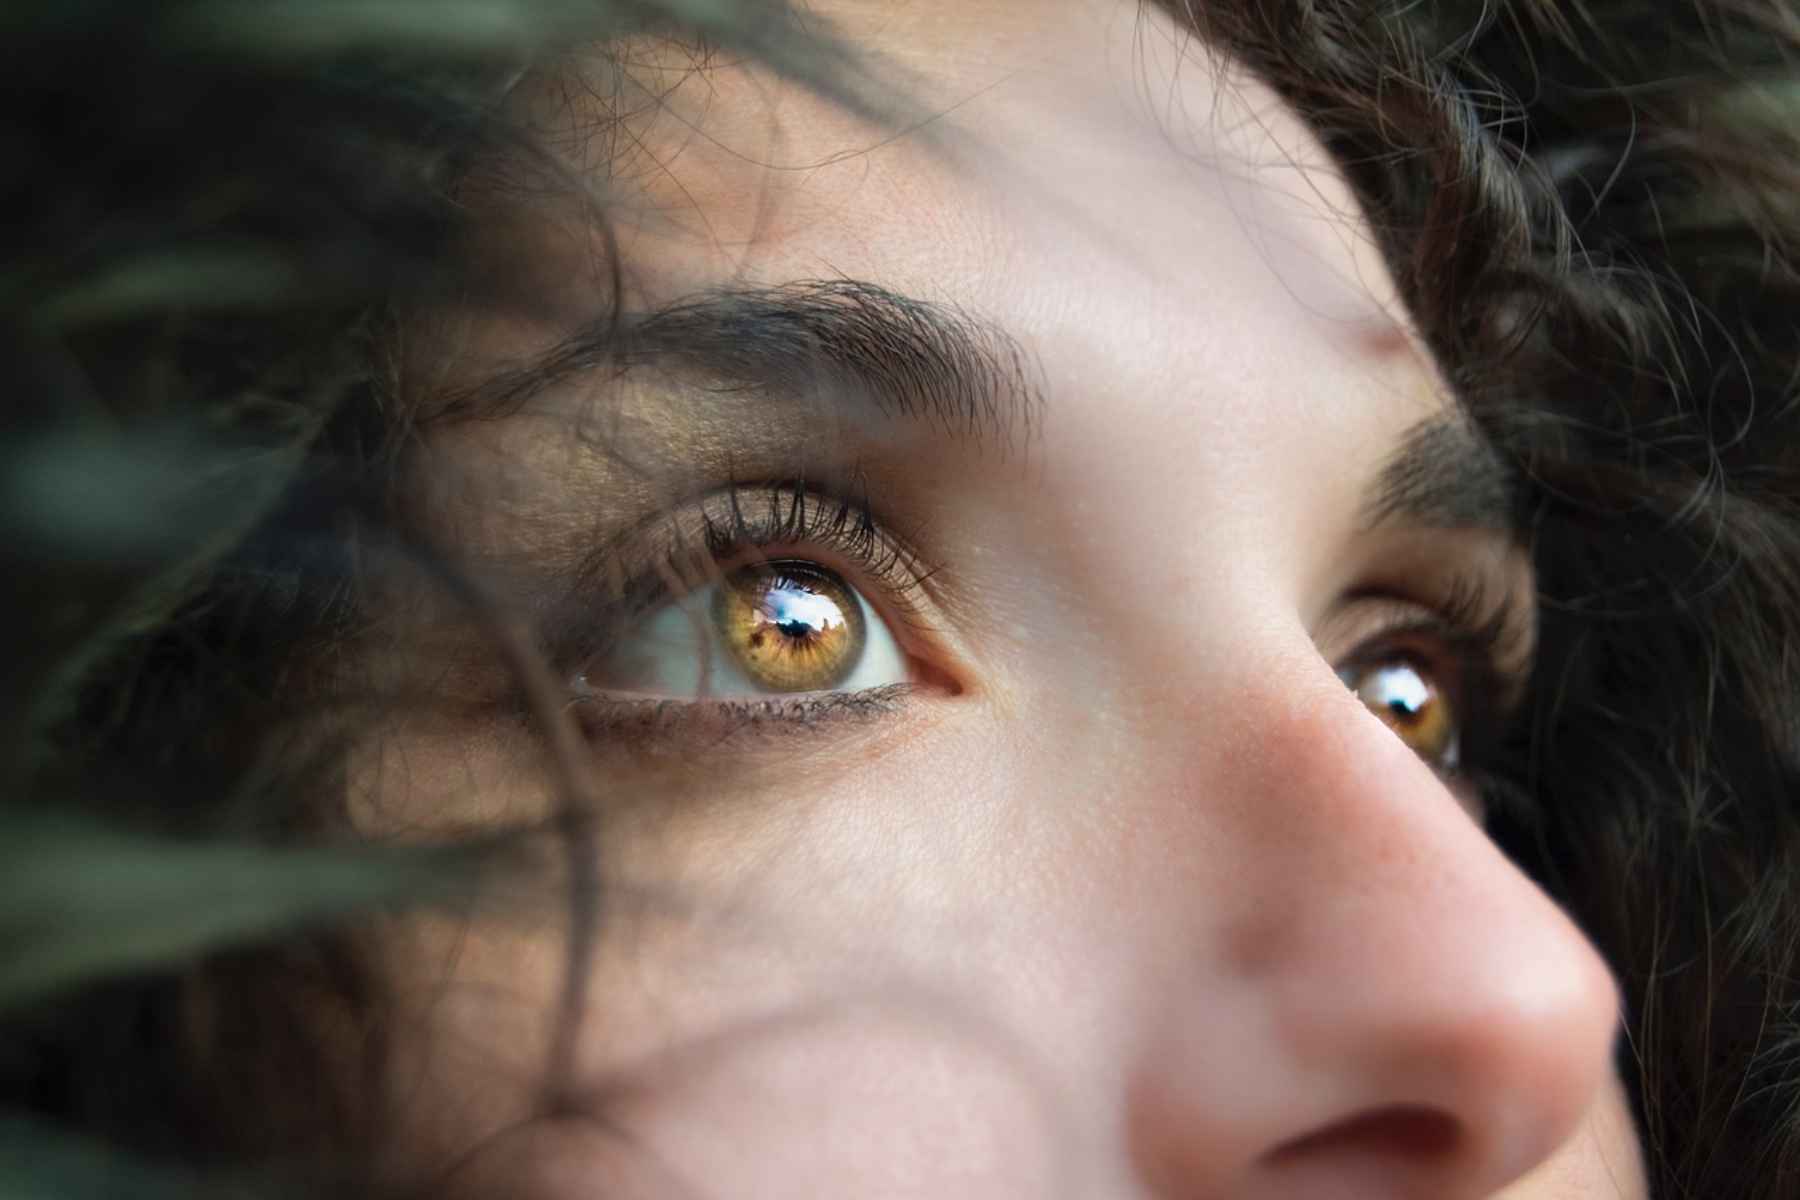 Ξηρά μάτια: Ποιο θρεπτικό συστατικό μπορεί να σας λείπει;